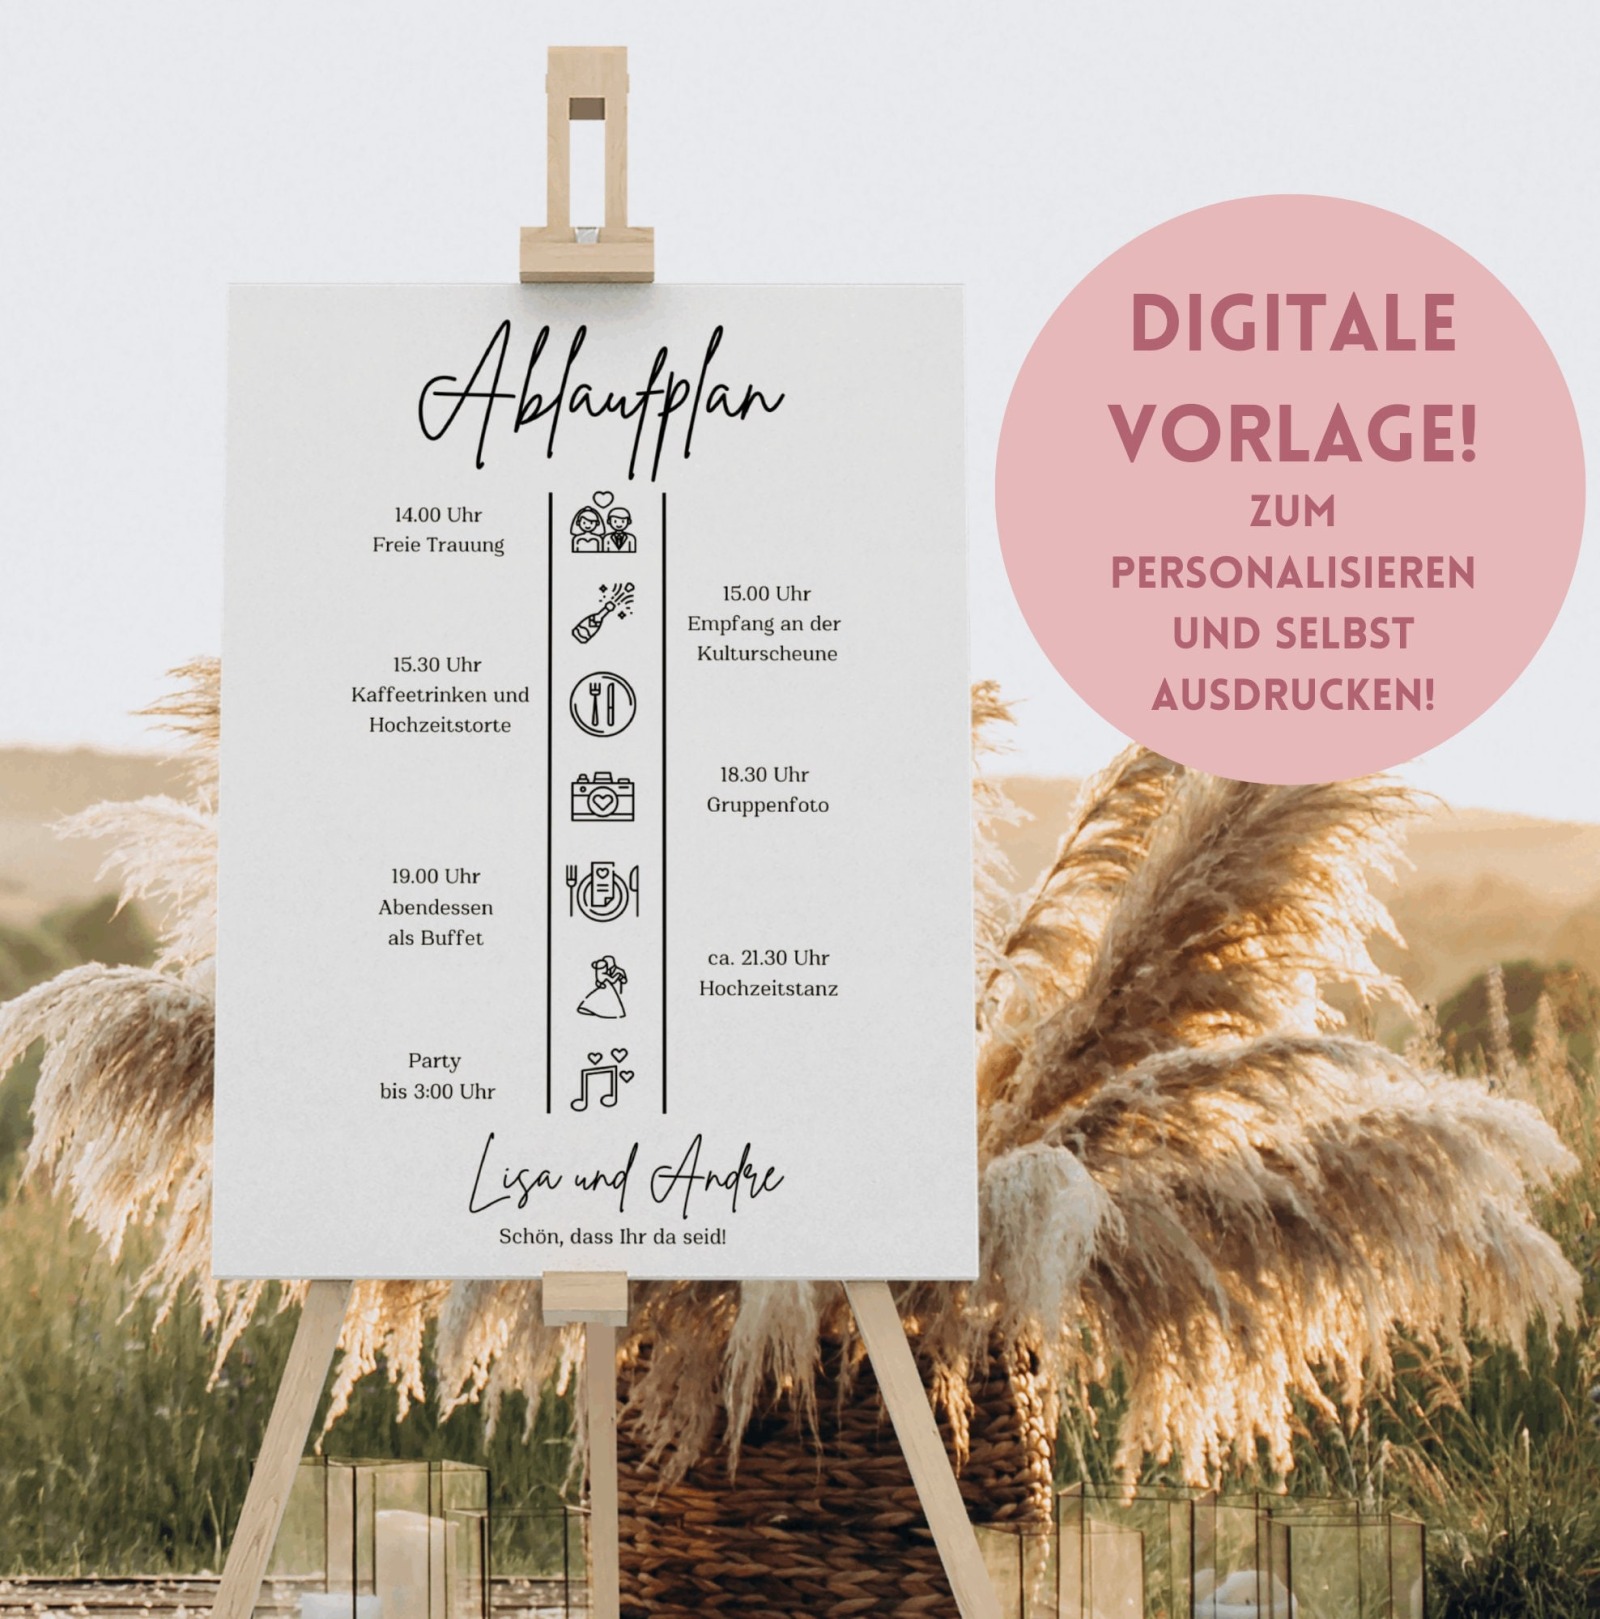 Personalisierbare Hochzeitsablaufplan-Vorlagen für Canva - Elegante Designs zum Download - DIY